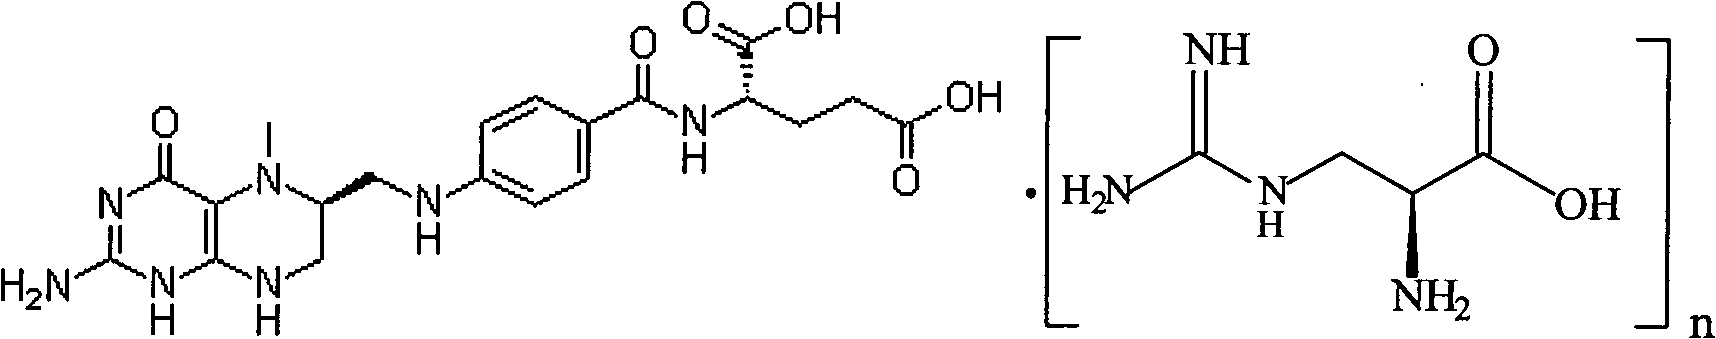 Preparation method of L-5-methyl tetrahydrofolate amino acid salt